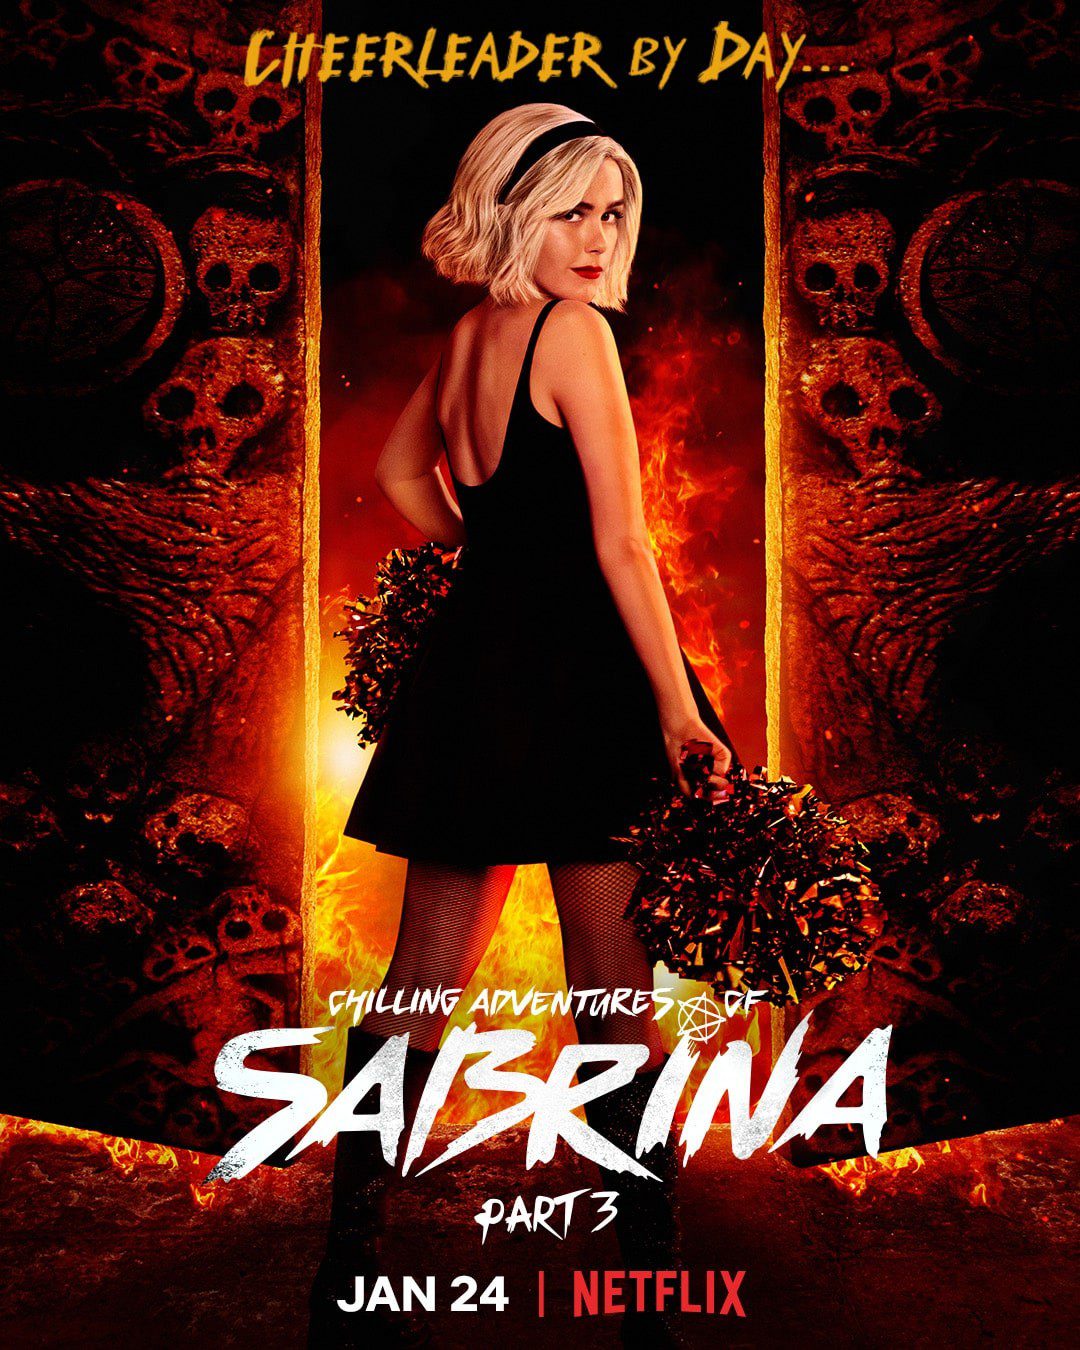 "Chilling Adventures of Sabrina" - teledysk zapowiadający 3. sezonu serialu